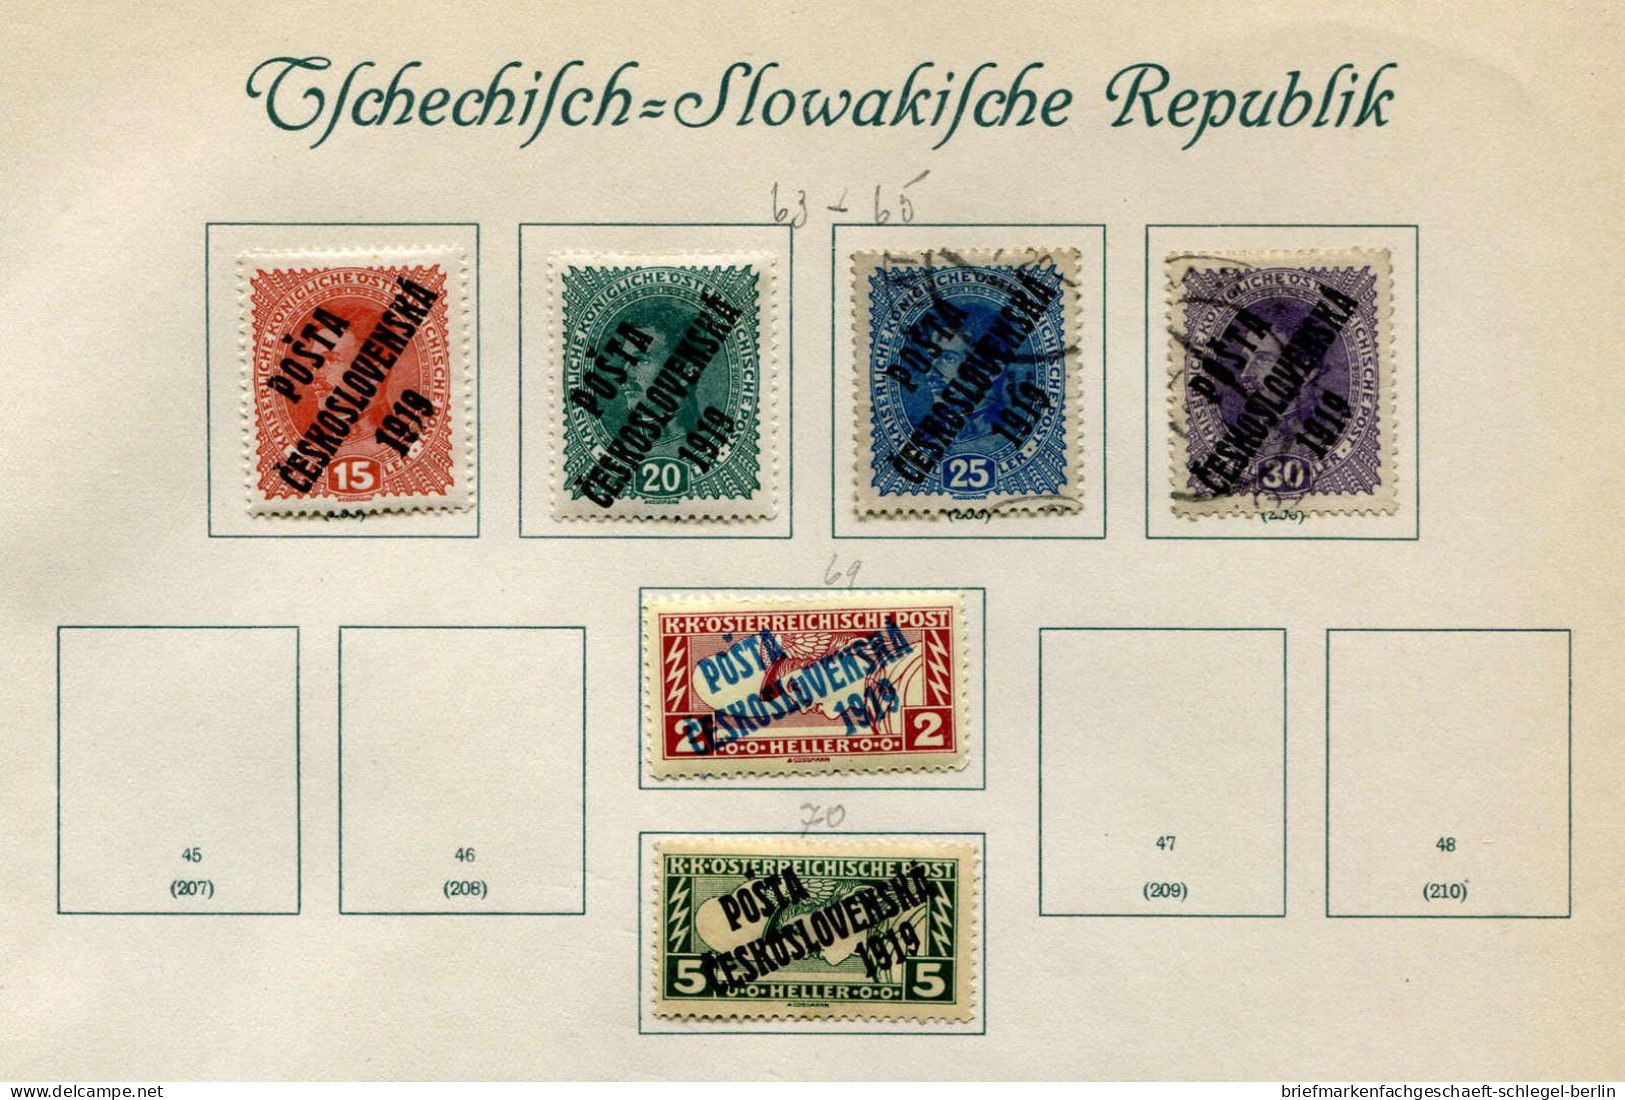 Tschechoslowakei, ungebraucht, gestempelt, Briefstück